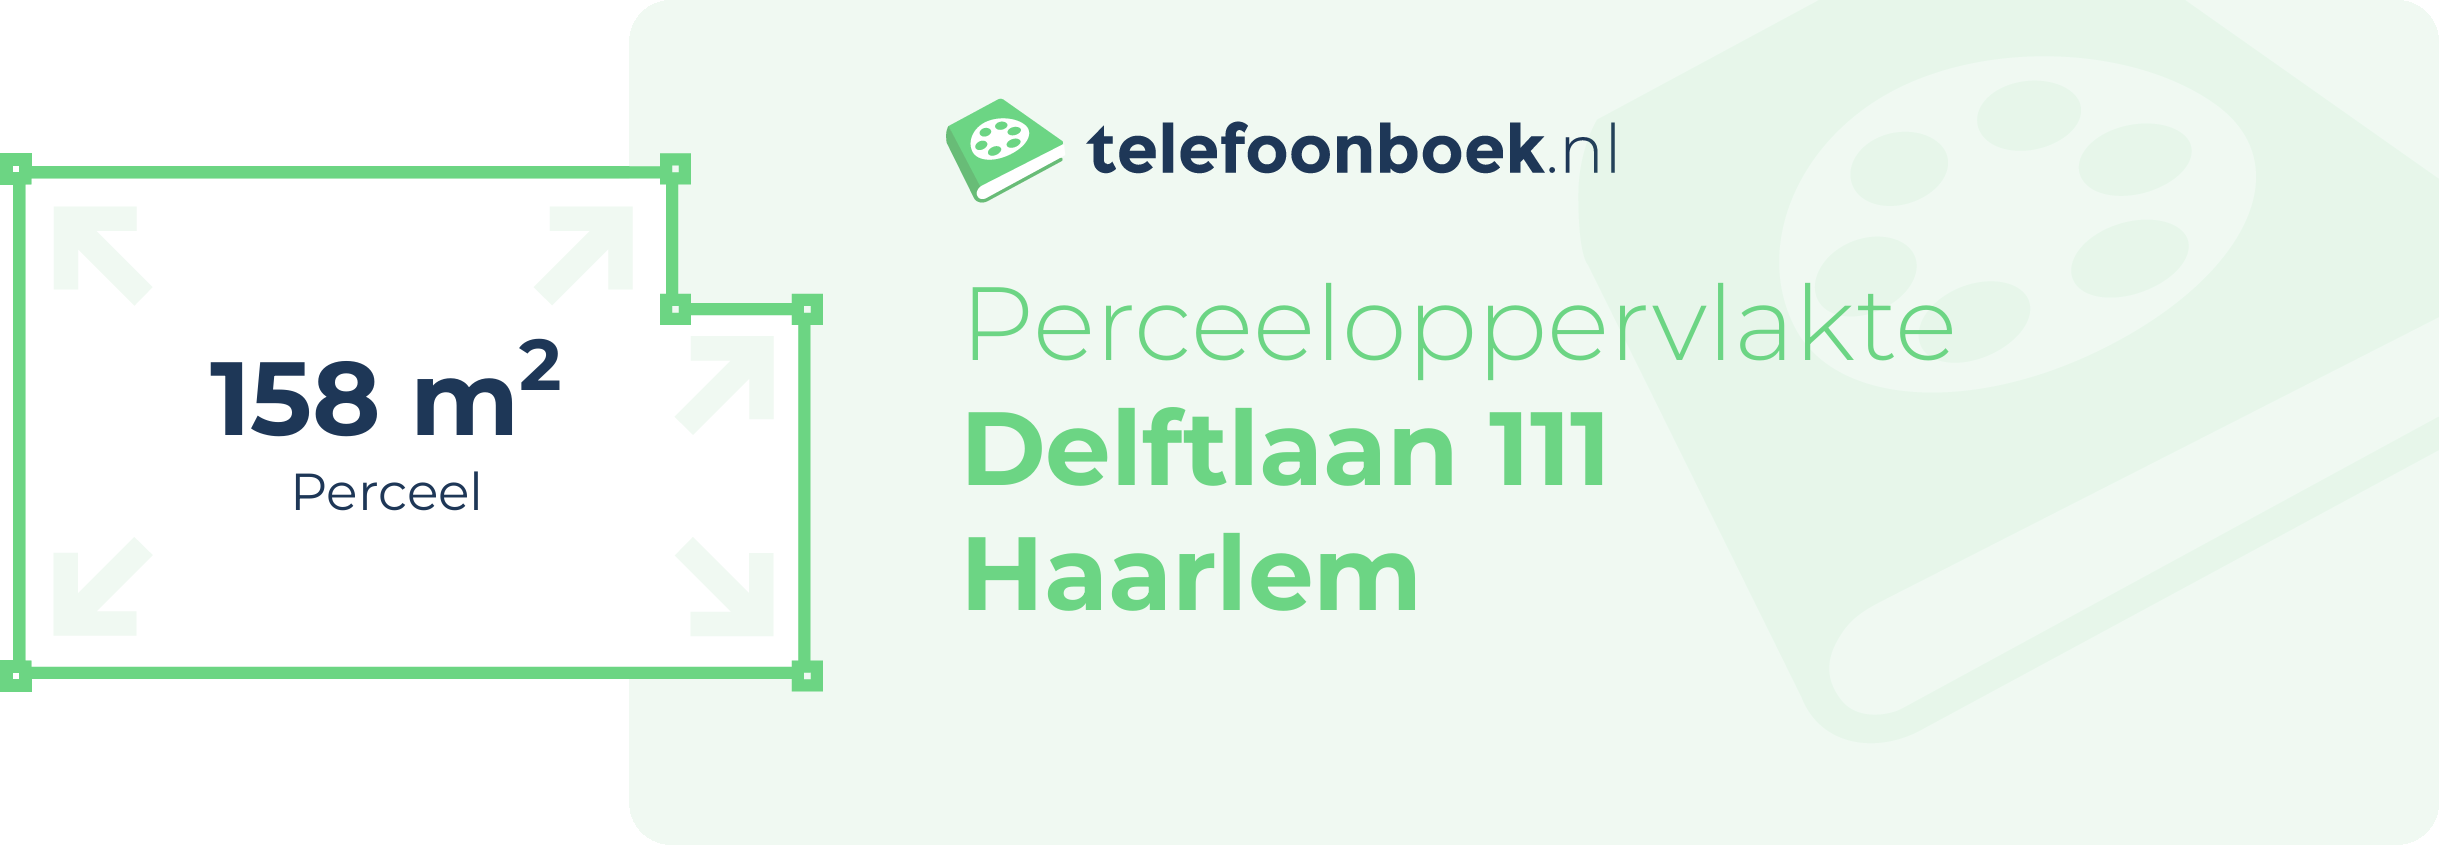 Perceeloppervlakte Delftlaan 111 Haarlem